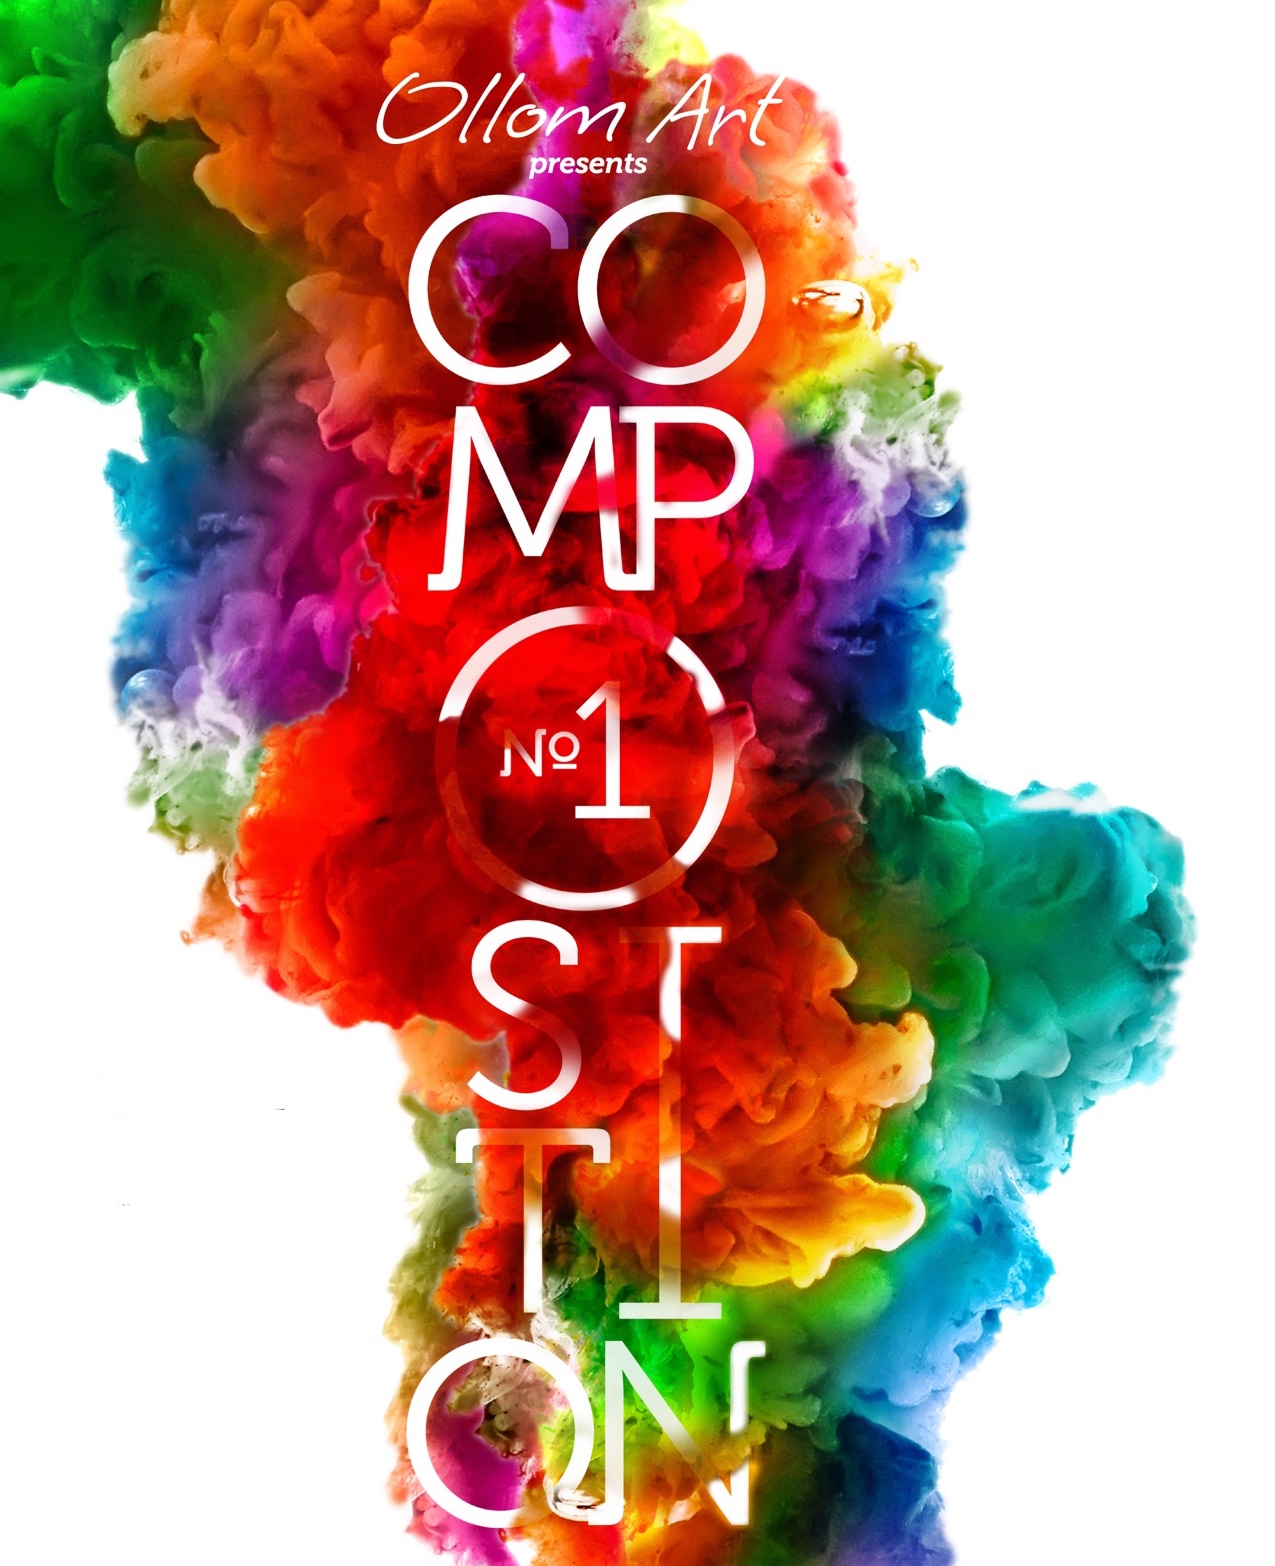 https://ollomart.com/wp-content/uploads/2017/02/Ollom-Art-Compostion-1-Logo-JPG.jpg